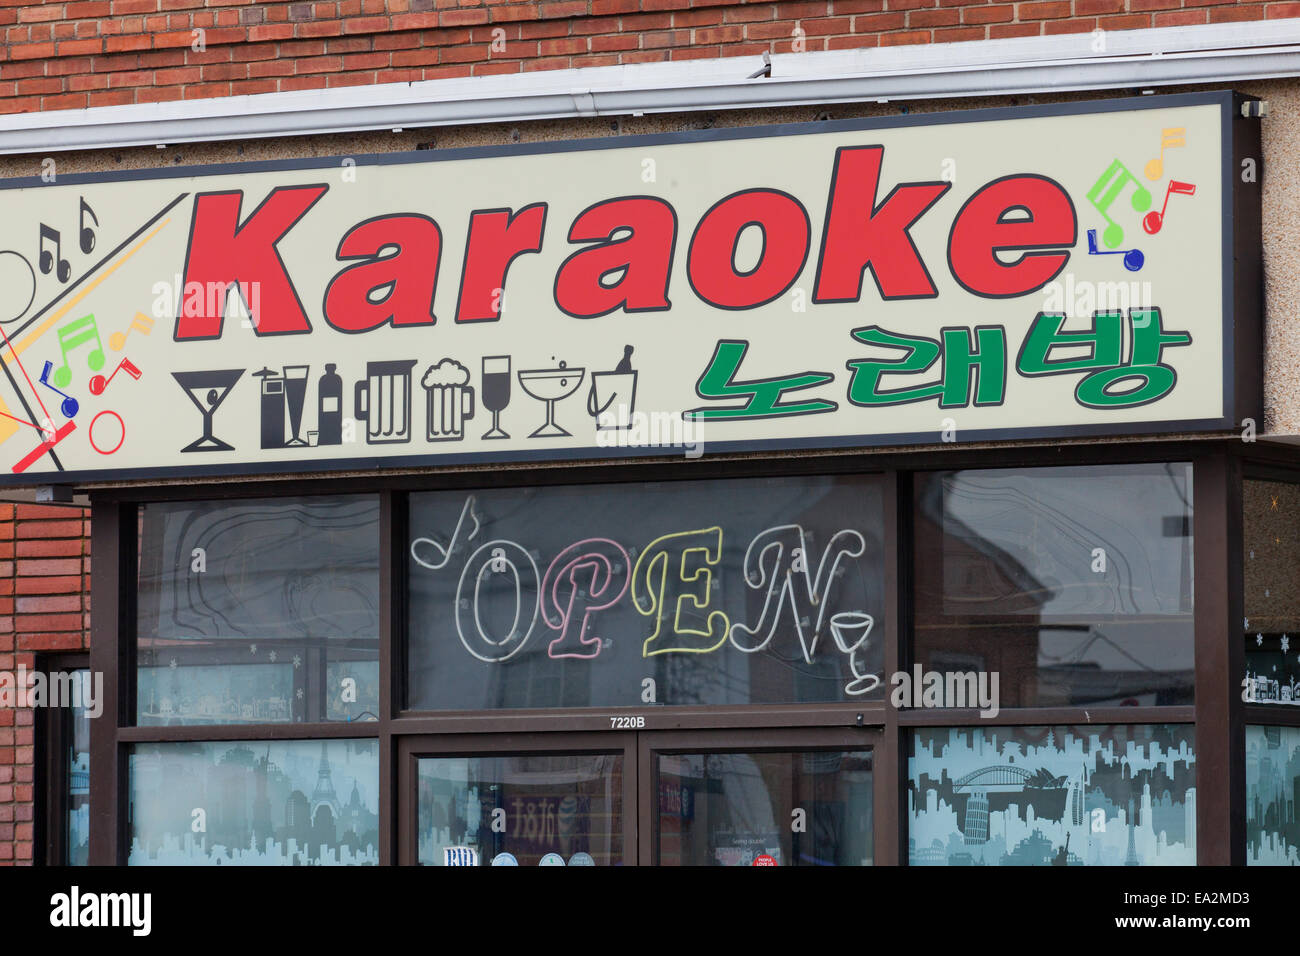 Karaoke bar sign - USA Stock Photo